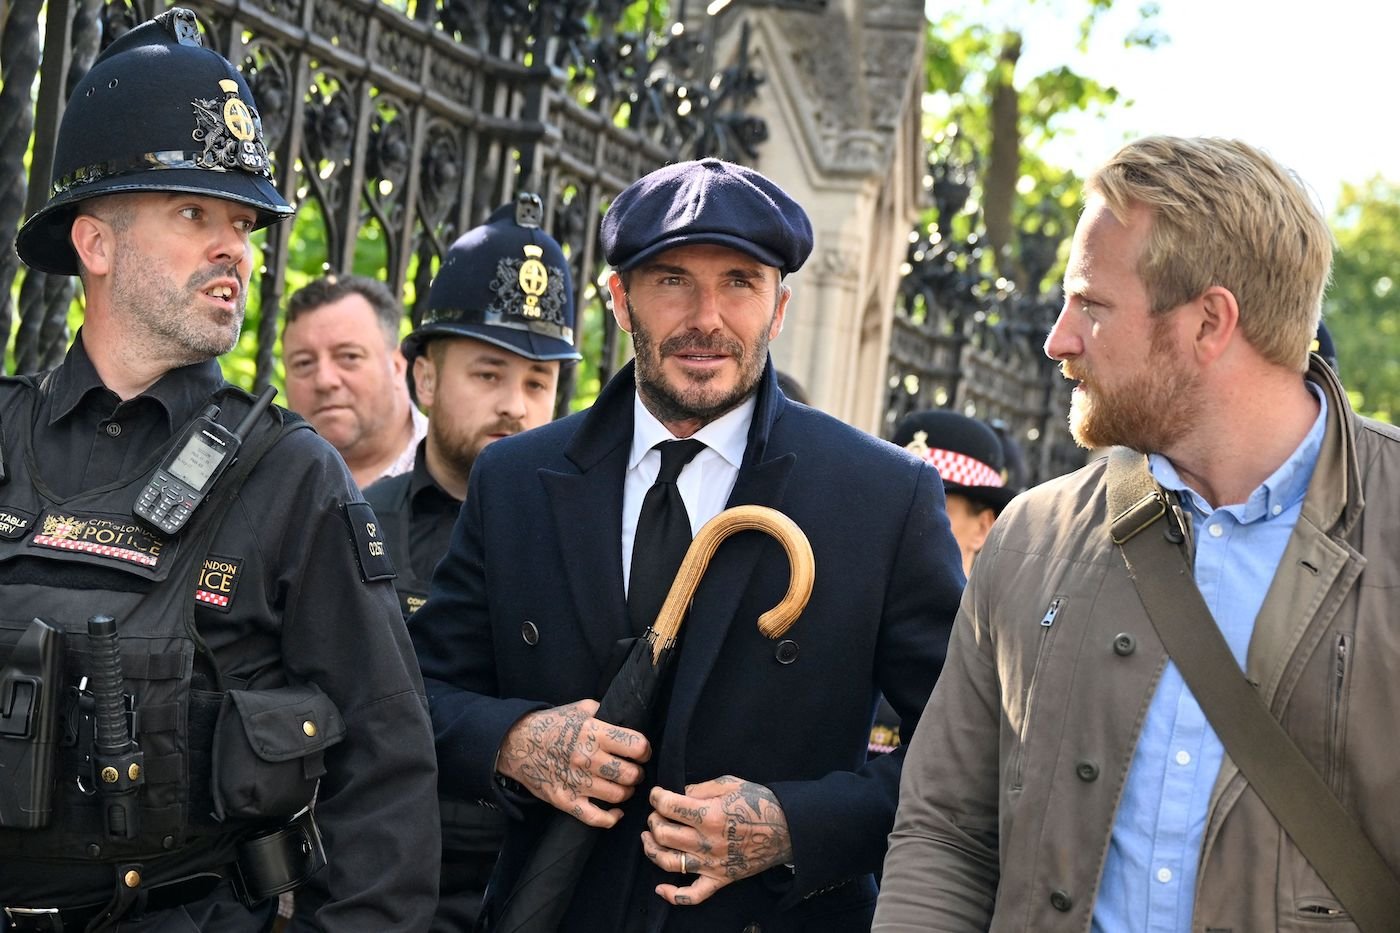 David Beckham aurait pu sauter la ligne pour voir la reine - Victoria Beckham révèle pourquoi il ne l'a pas fait